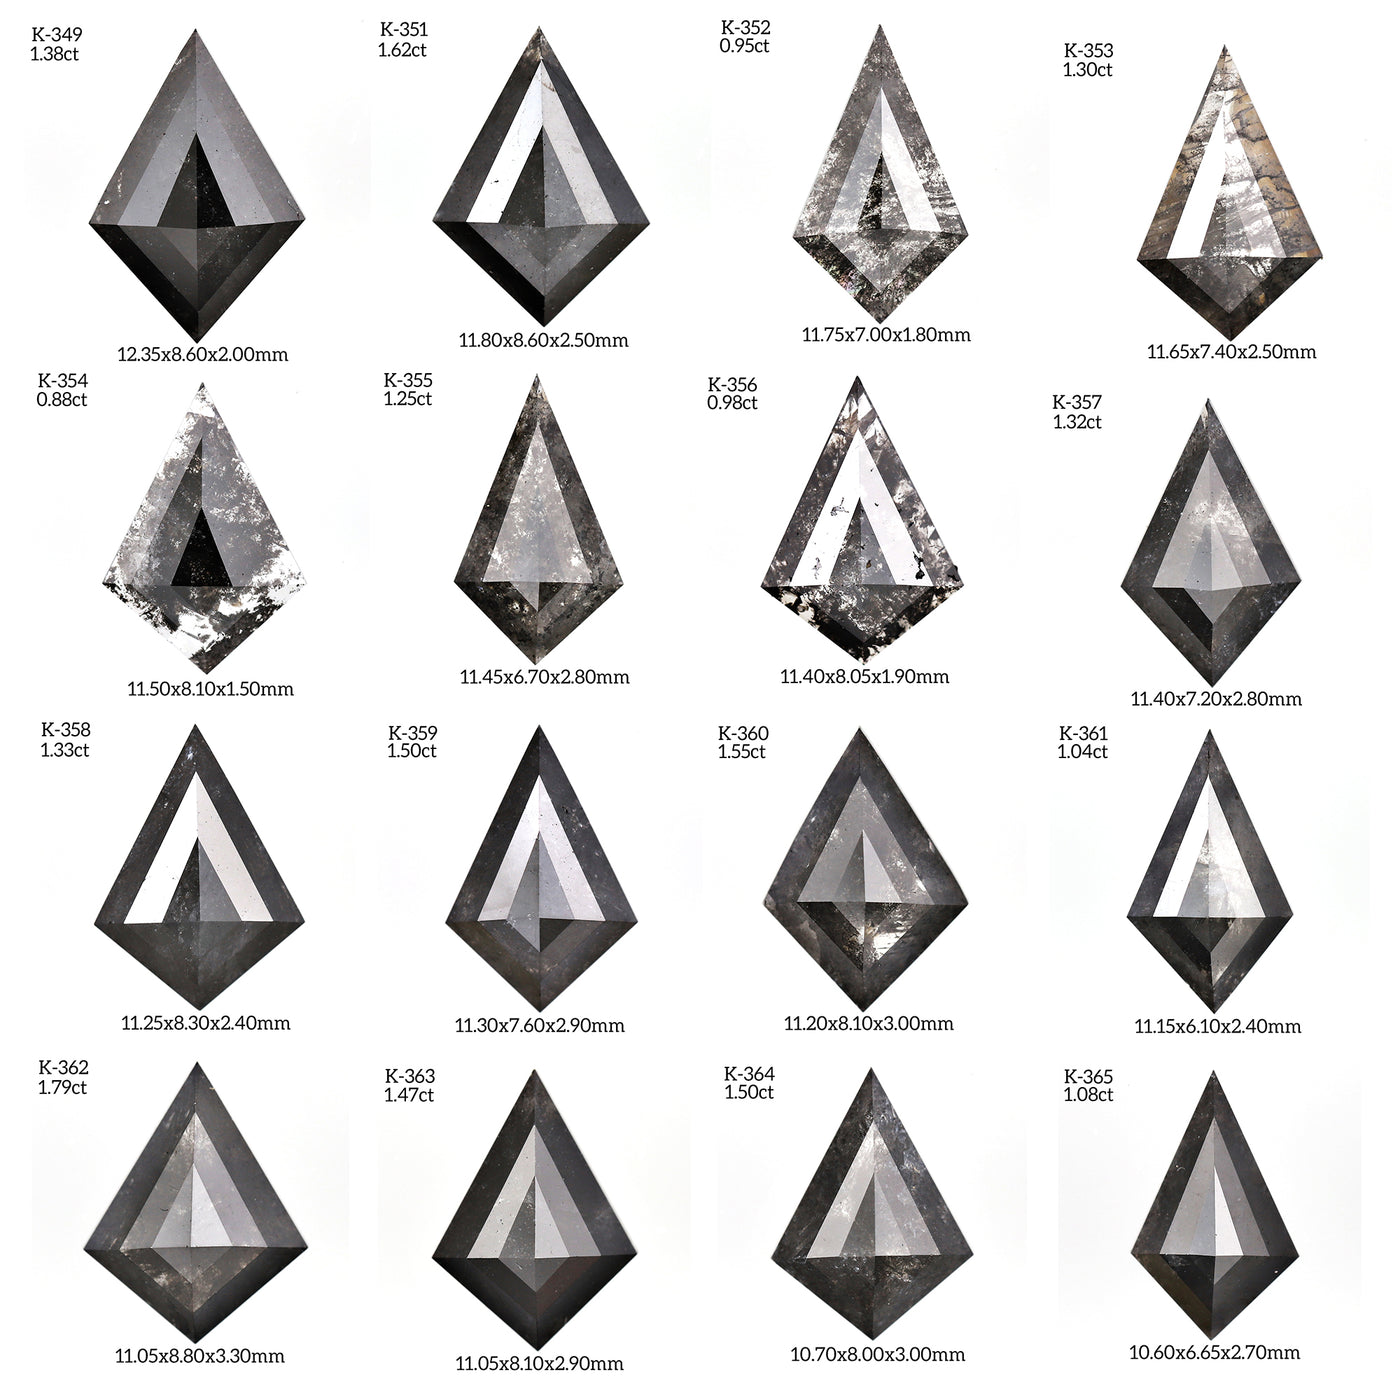 K301 - Salt and pepper kite diamond